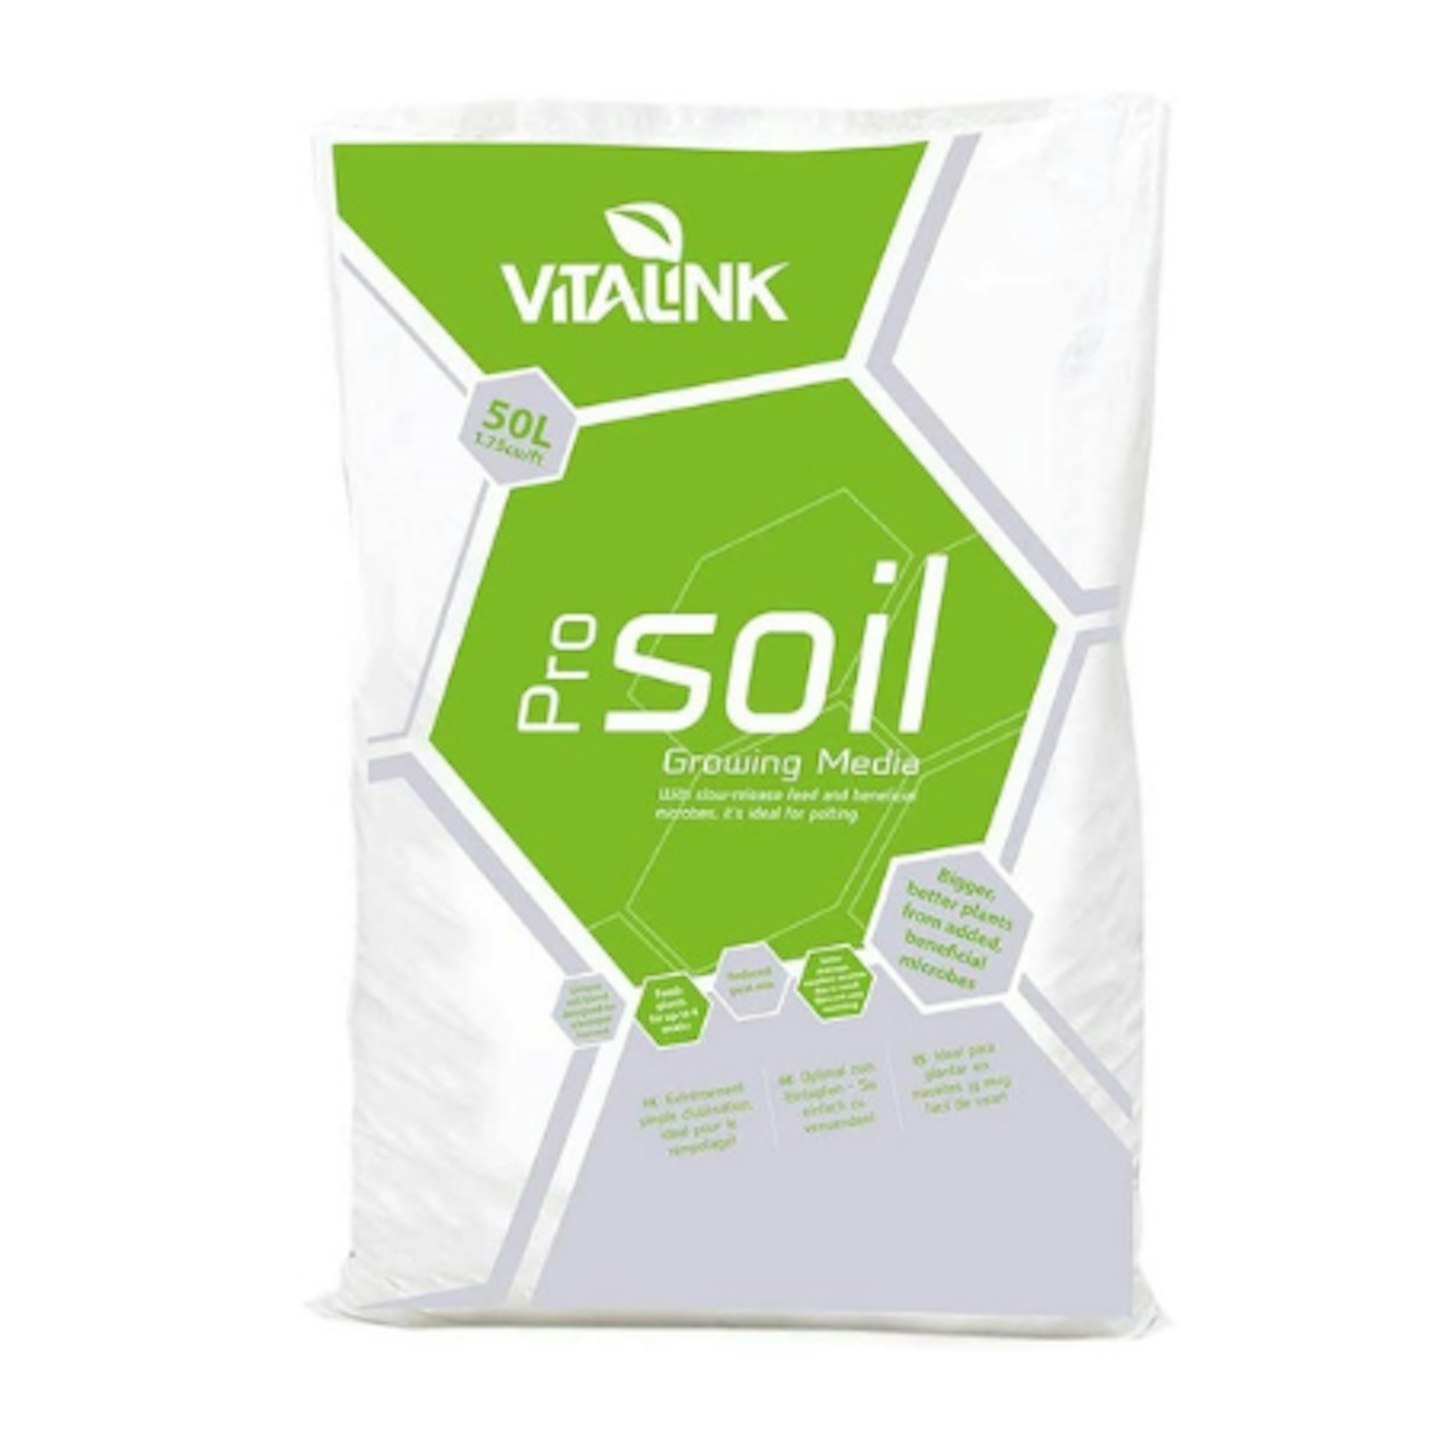 VitaLink 50L Professional Enriched Soil Bag